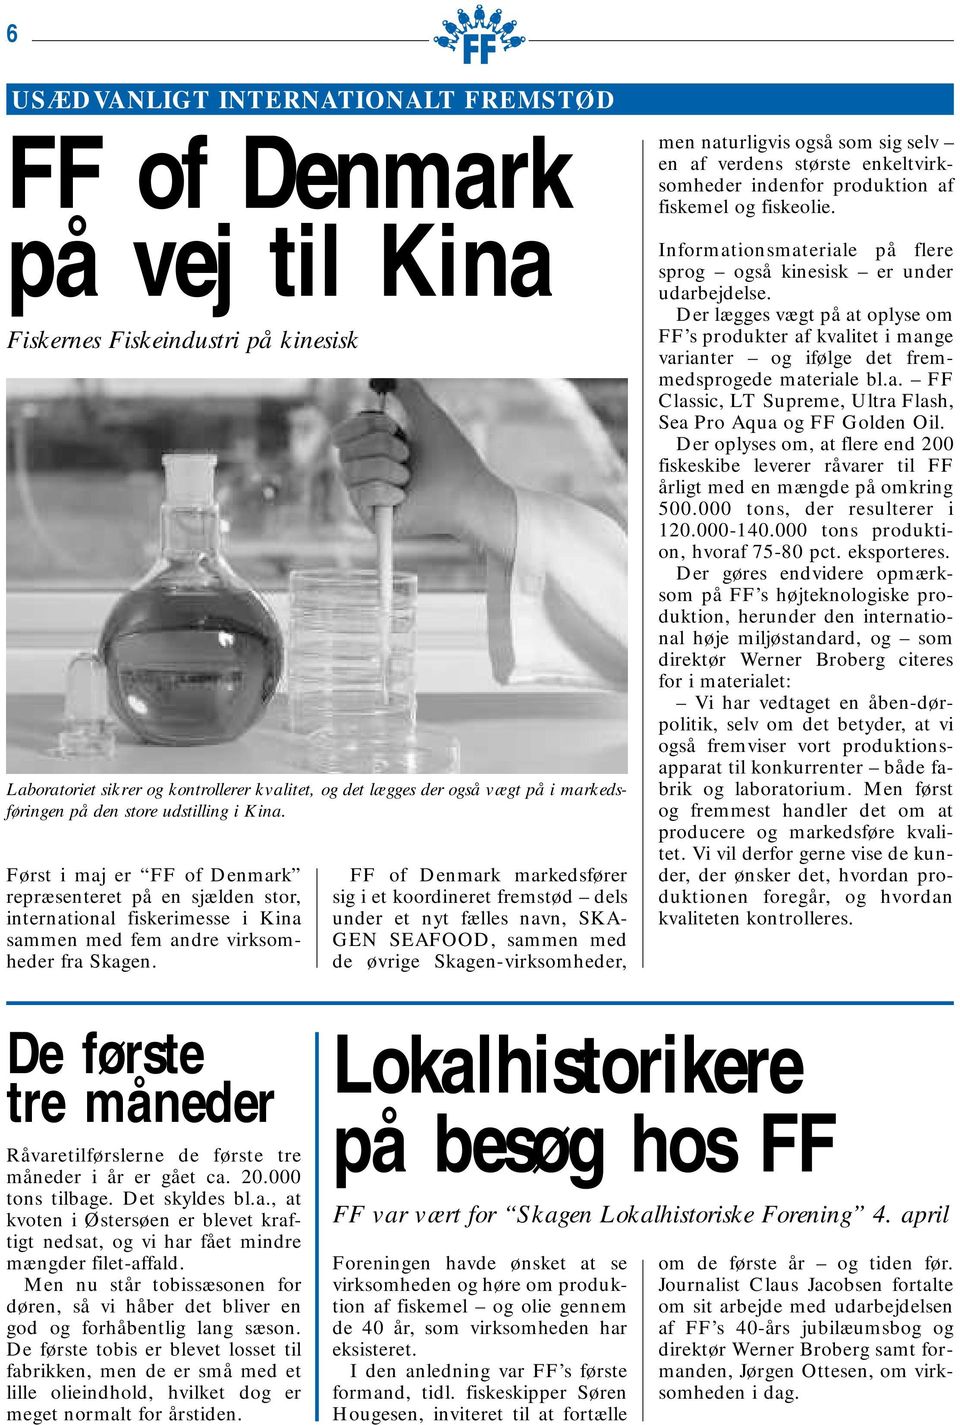 FF of Denmark markedsfører sig i et koordineret fremstød dels under et nyt fælles navn, SKA- GEN SEAFOOD, sammen med de øvrige Skagen-virksomheder, men naturligvis også som sig selv en af verdens